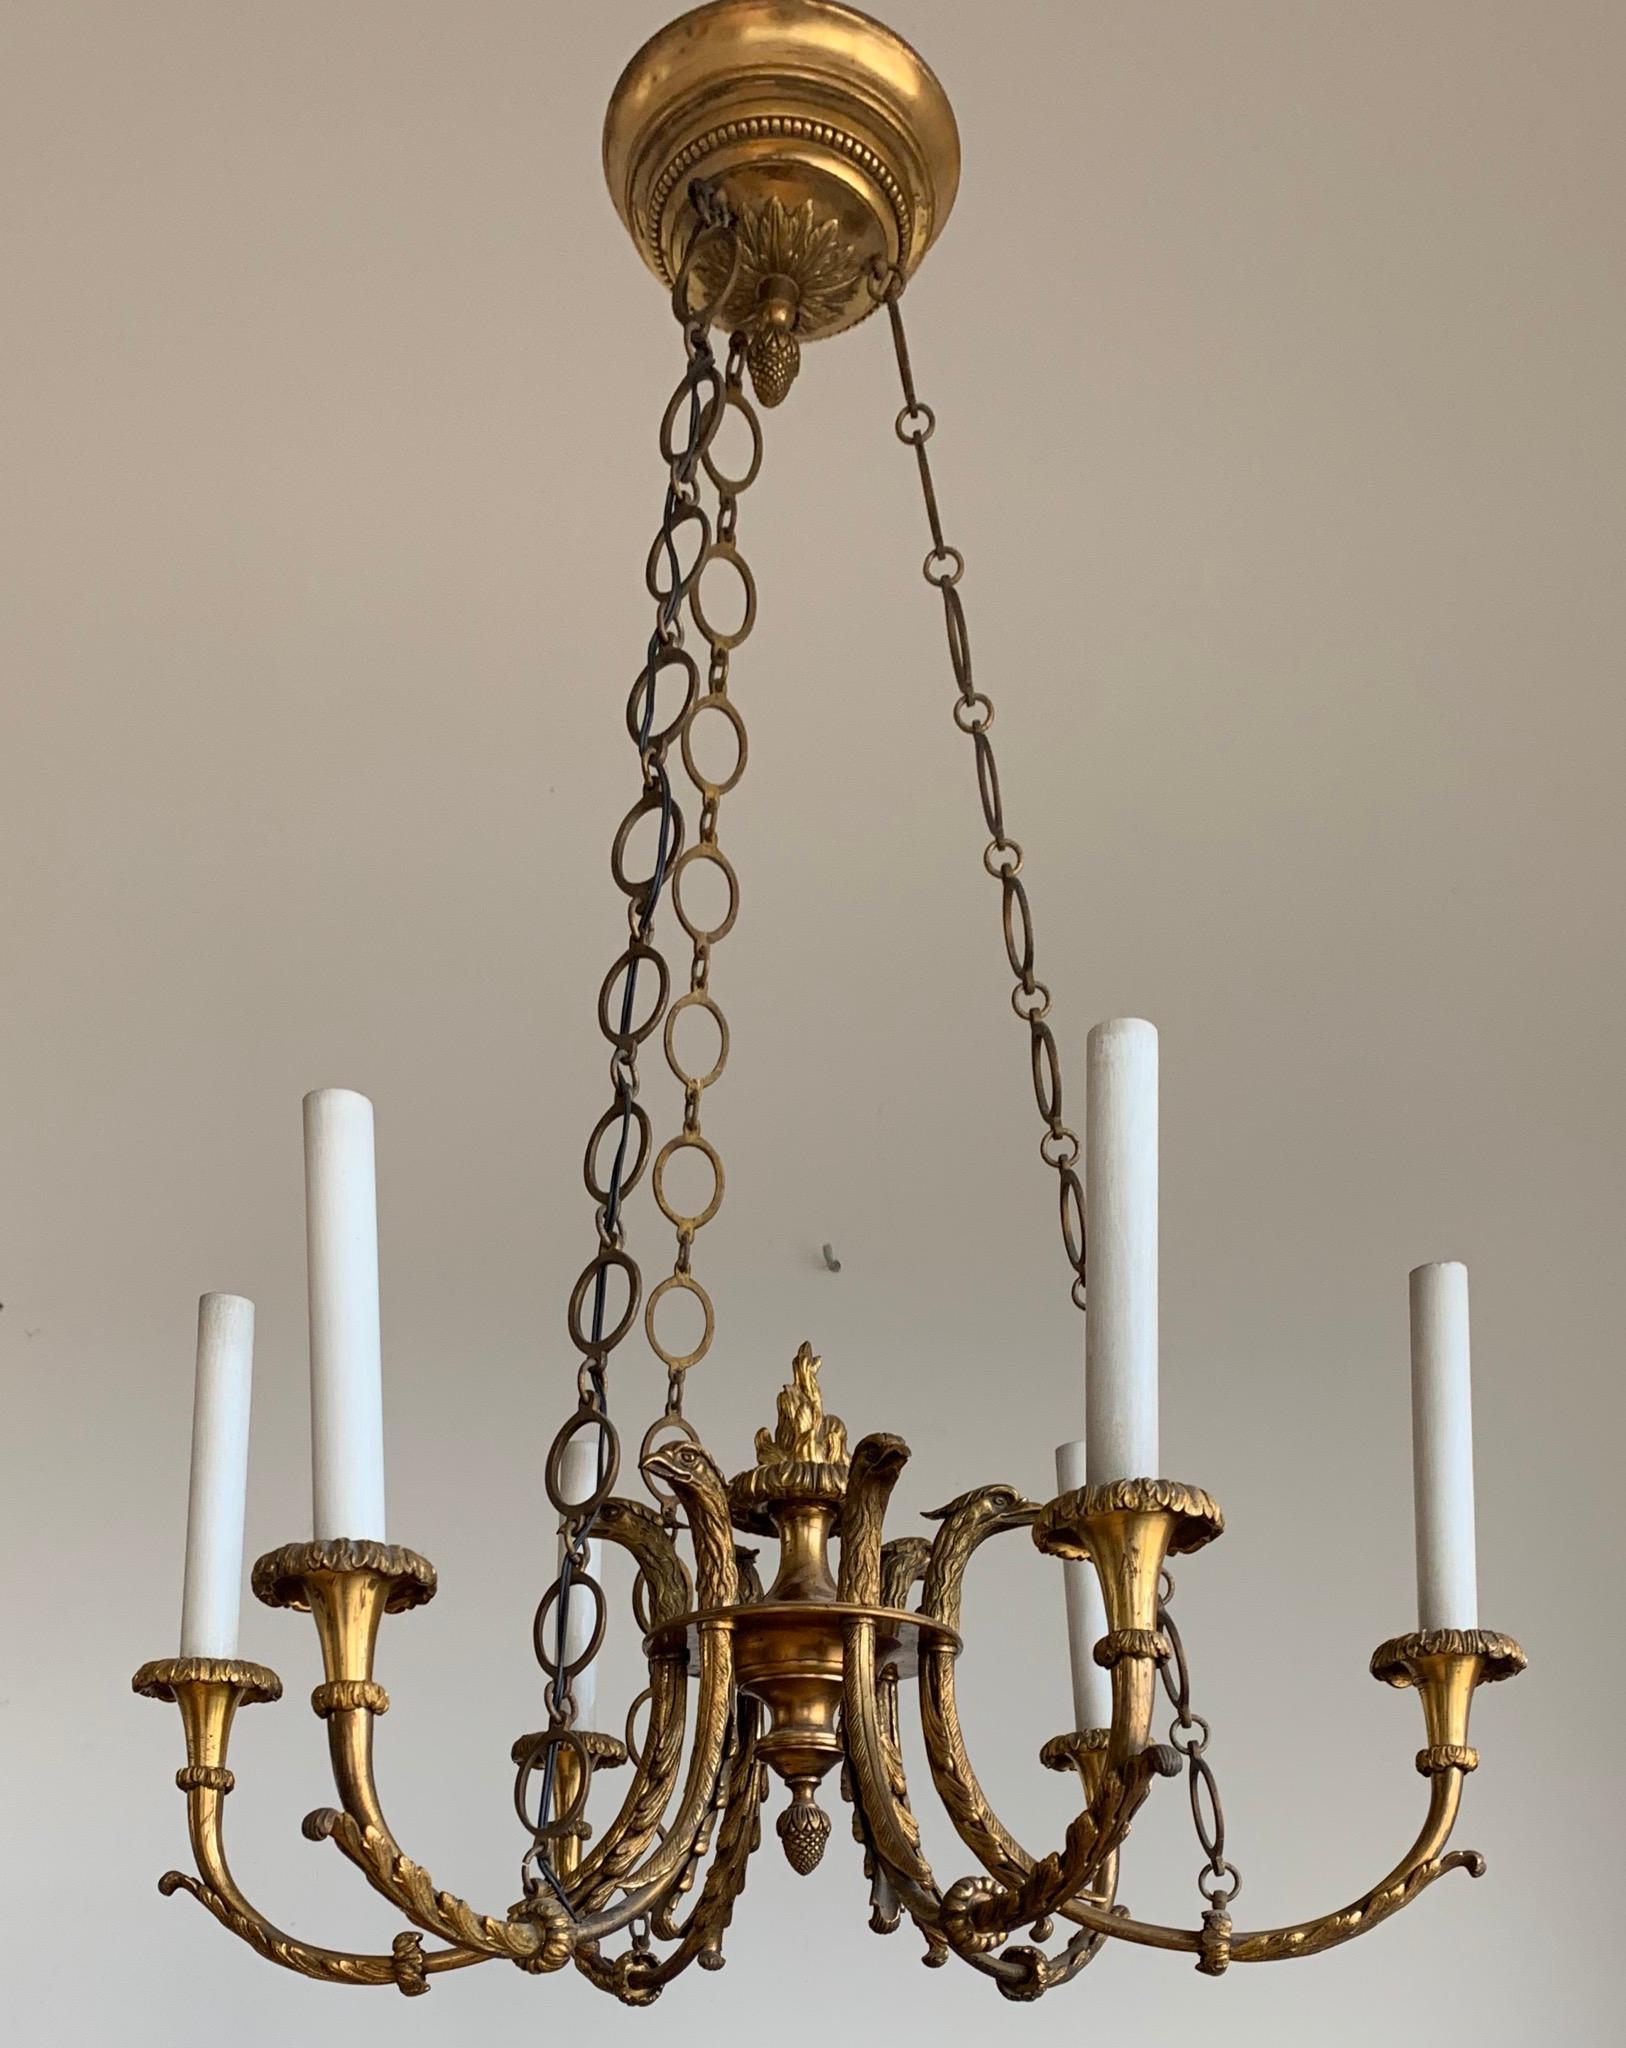 Antique & Striking Empire Revival Gilt Bronze Pendant Light w. Eagle Sculptures For Sale 8